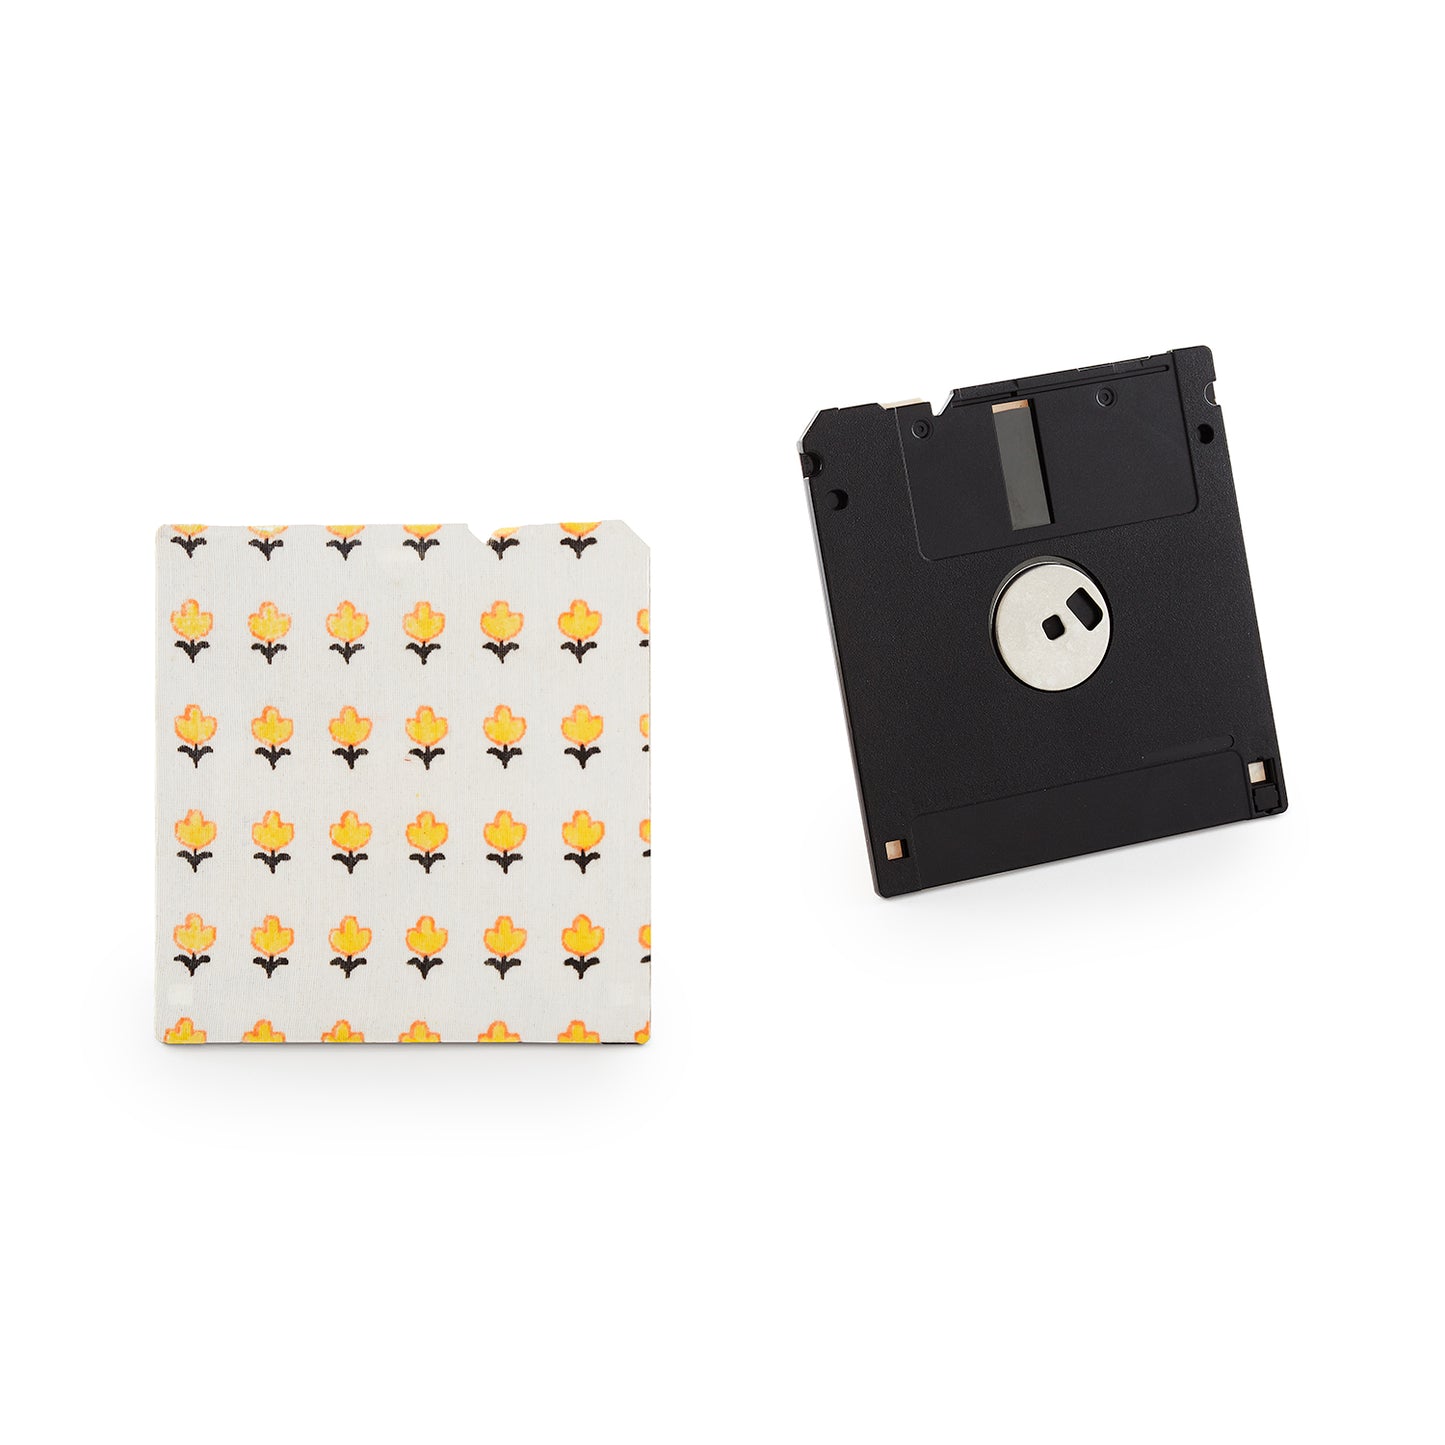 White - Floppy Disk Coaster Set of 2